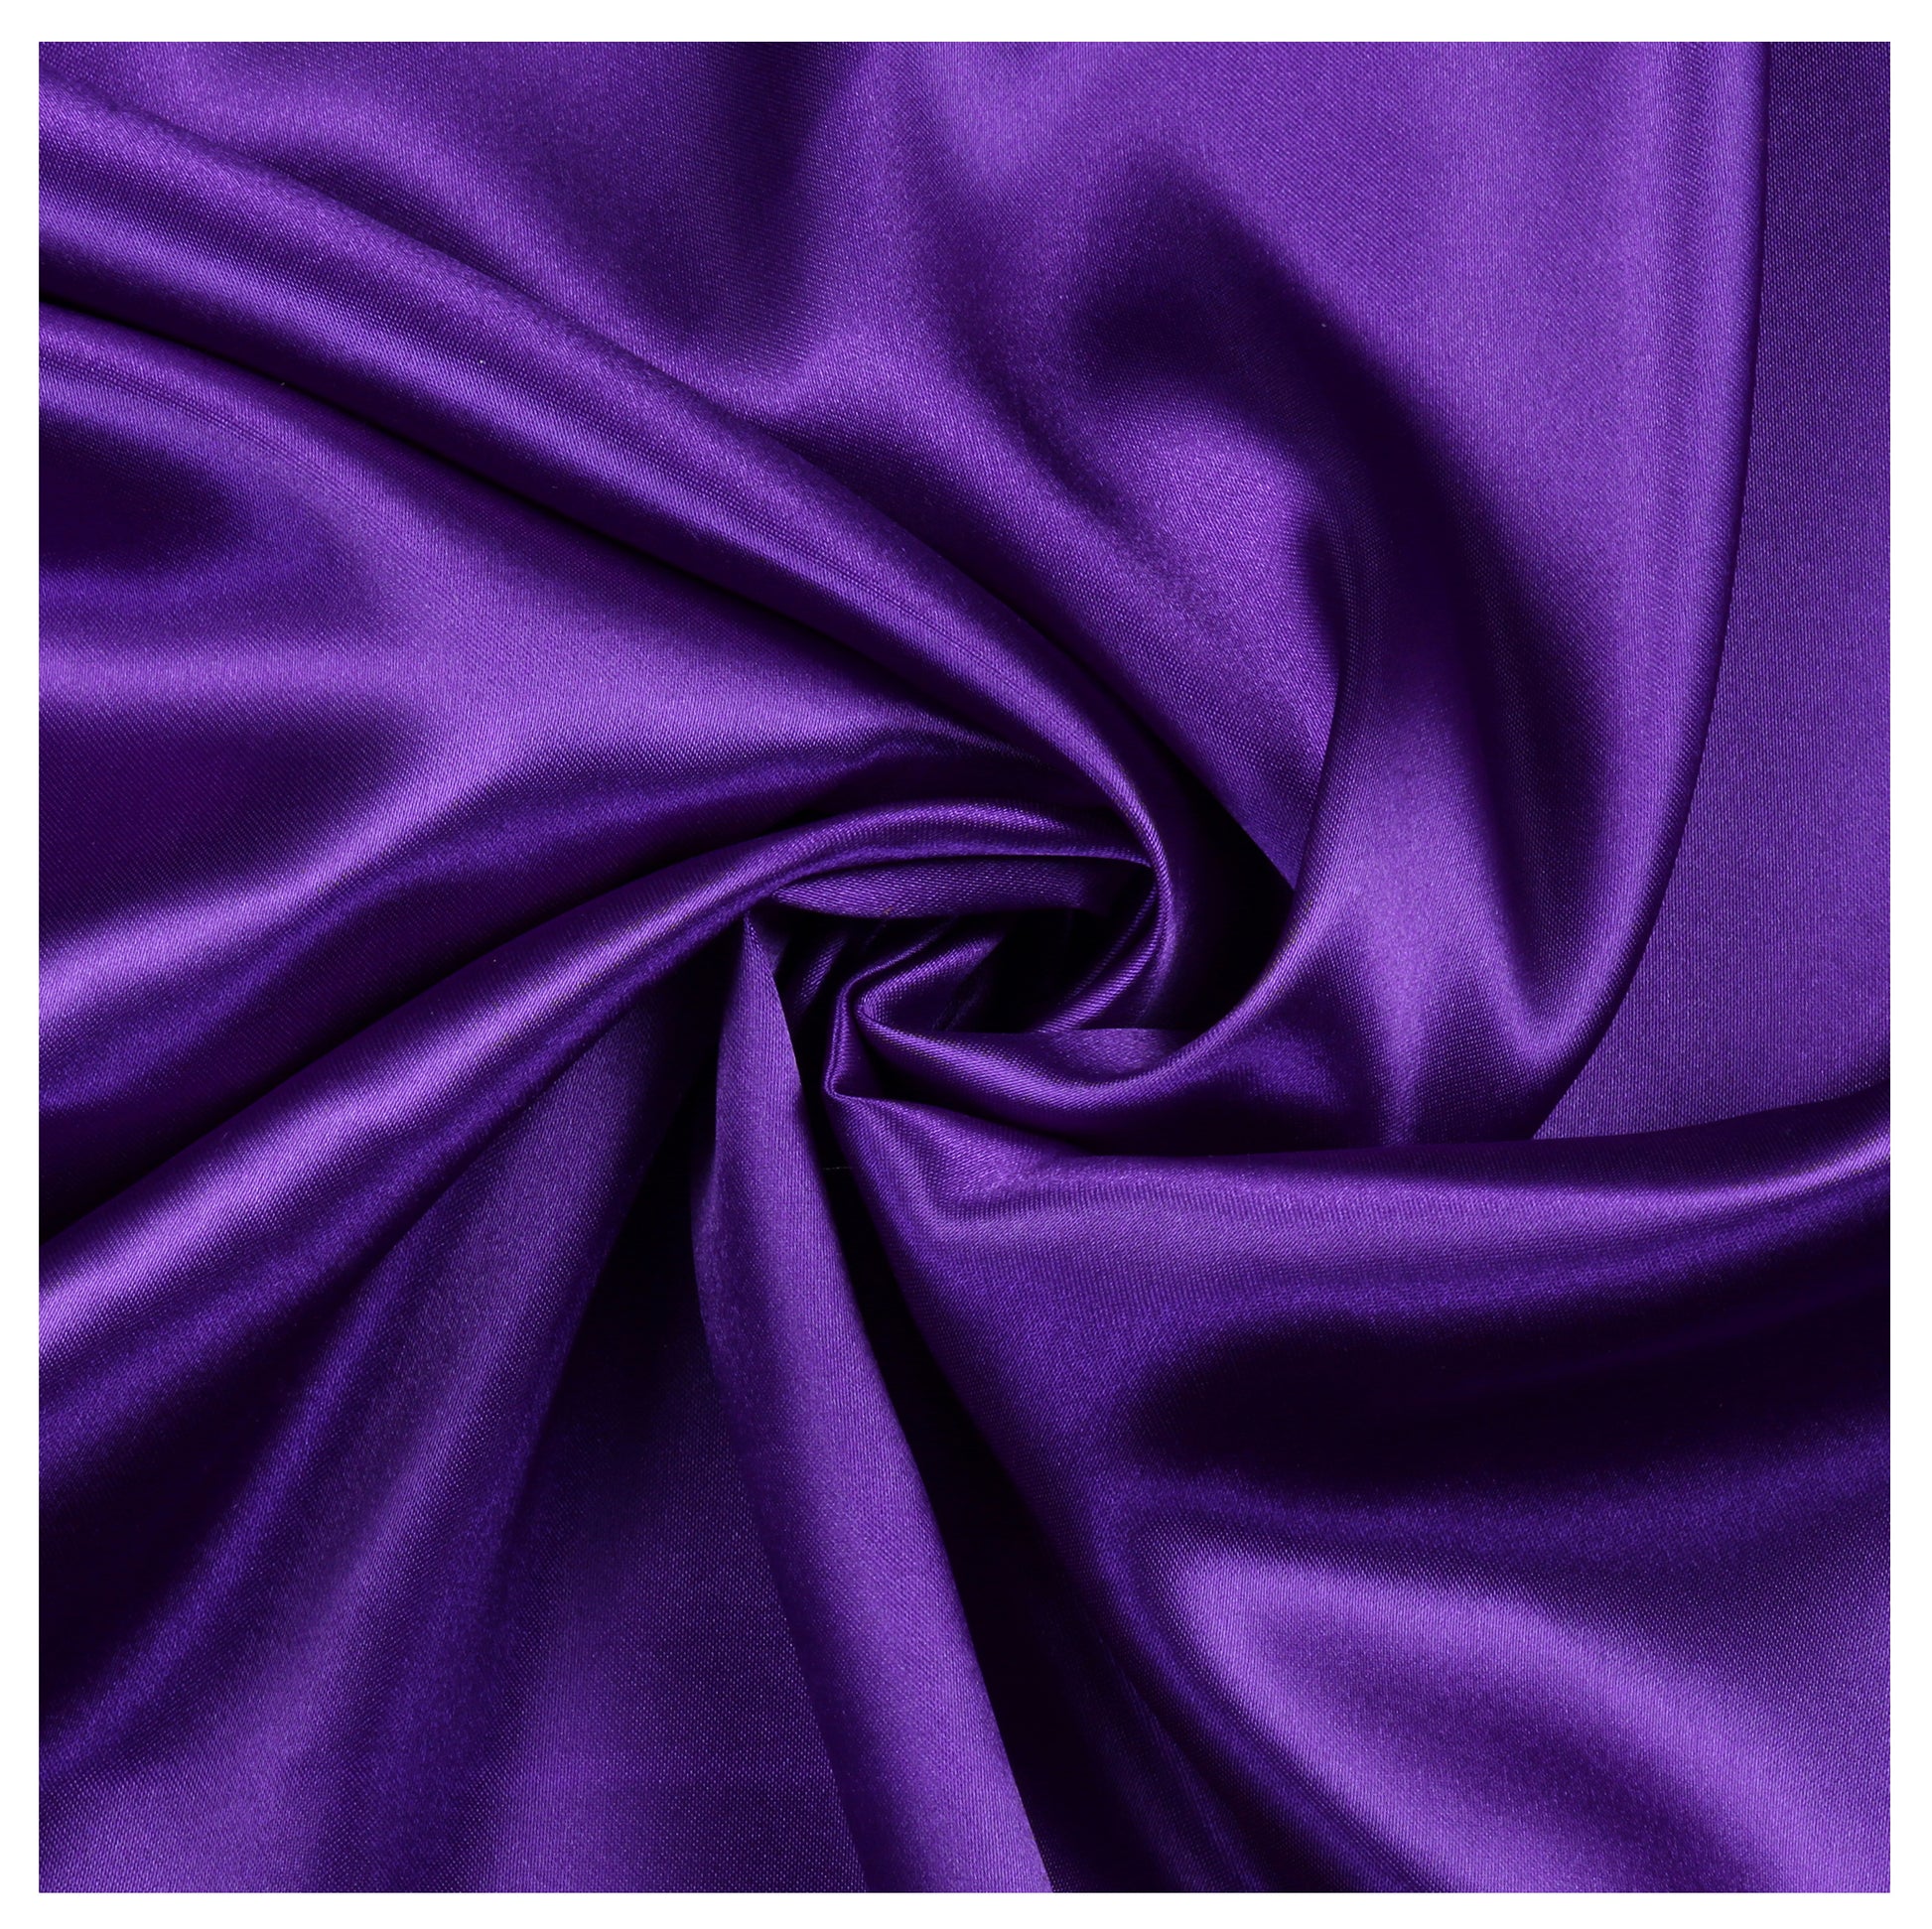 Cadbury Purple,e80fe571-c2a8-4dd7-a110-dd46326f4495